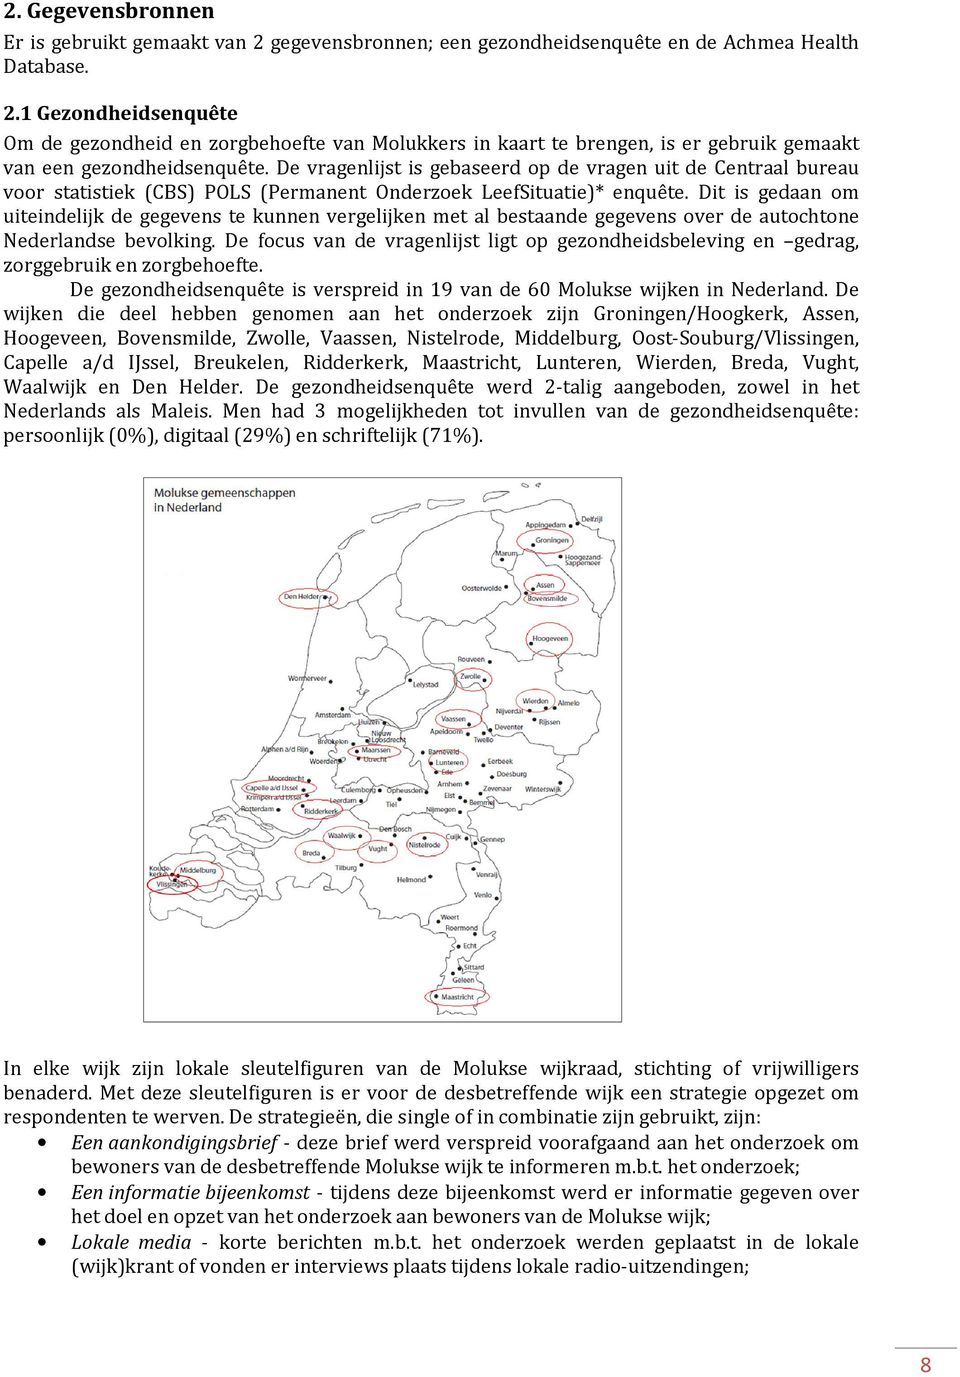 Dit is gedaan om uiteindelijk de gegevens te kunnen vergelijken met al bestaande gegevens over de autochtone Nederlandse bevolking.